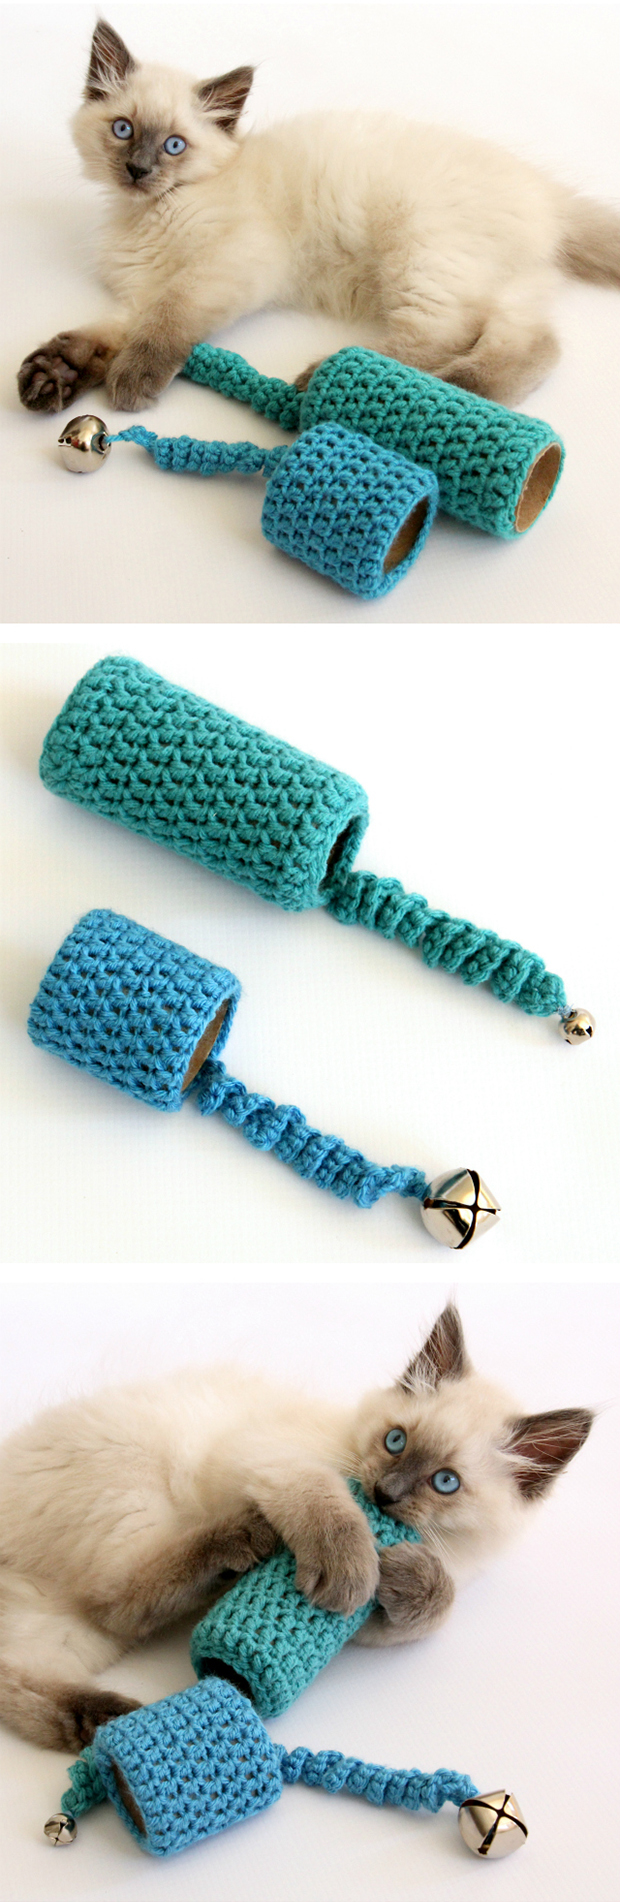 20 DIY Crochet Cat Toys